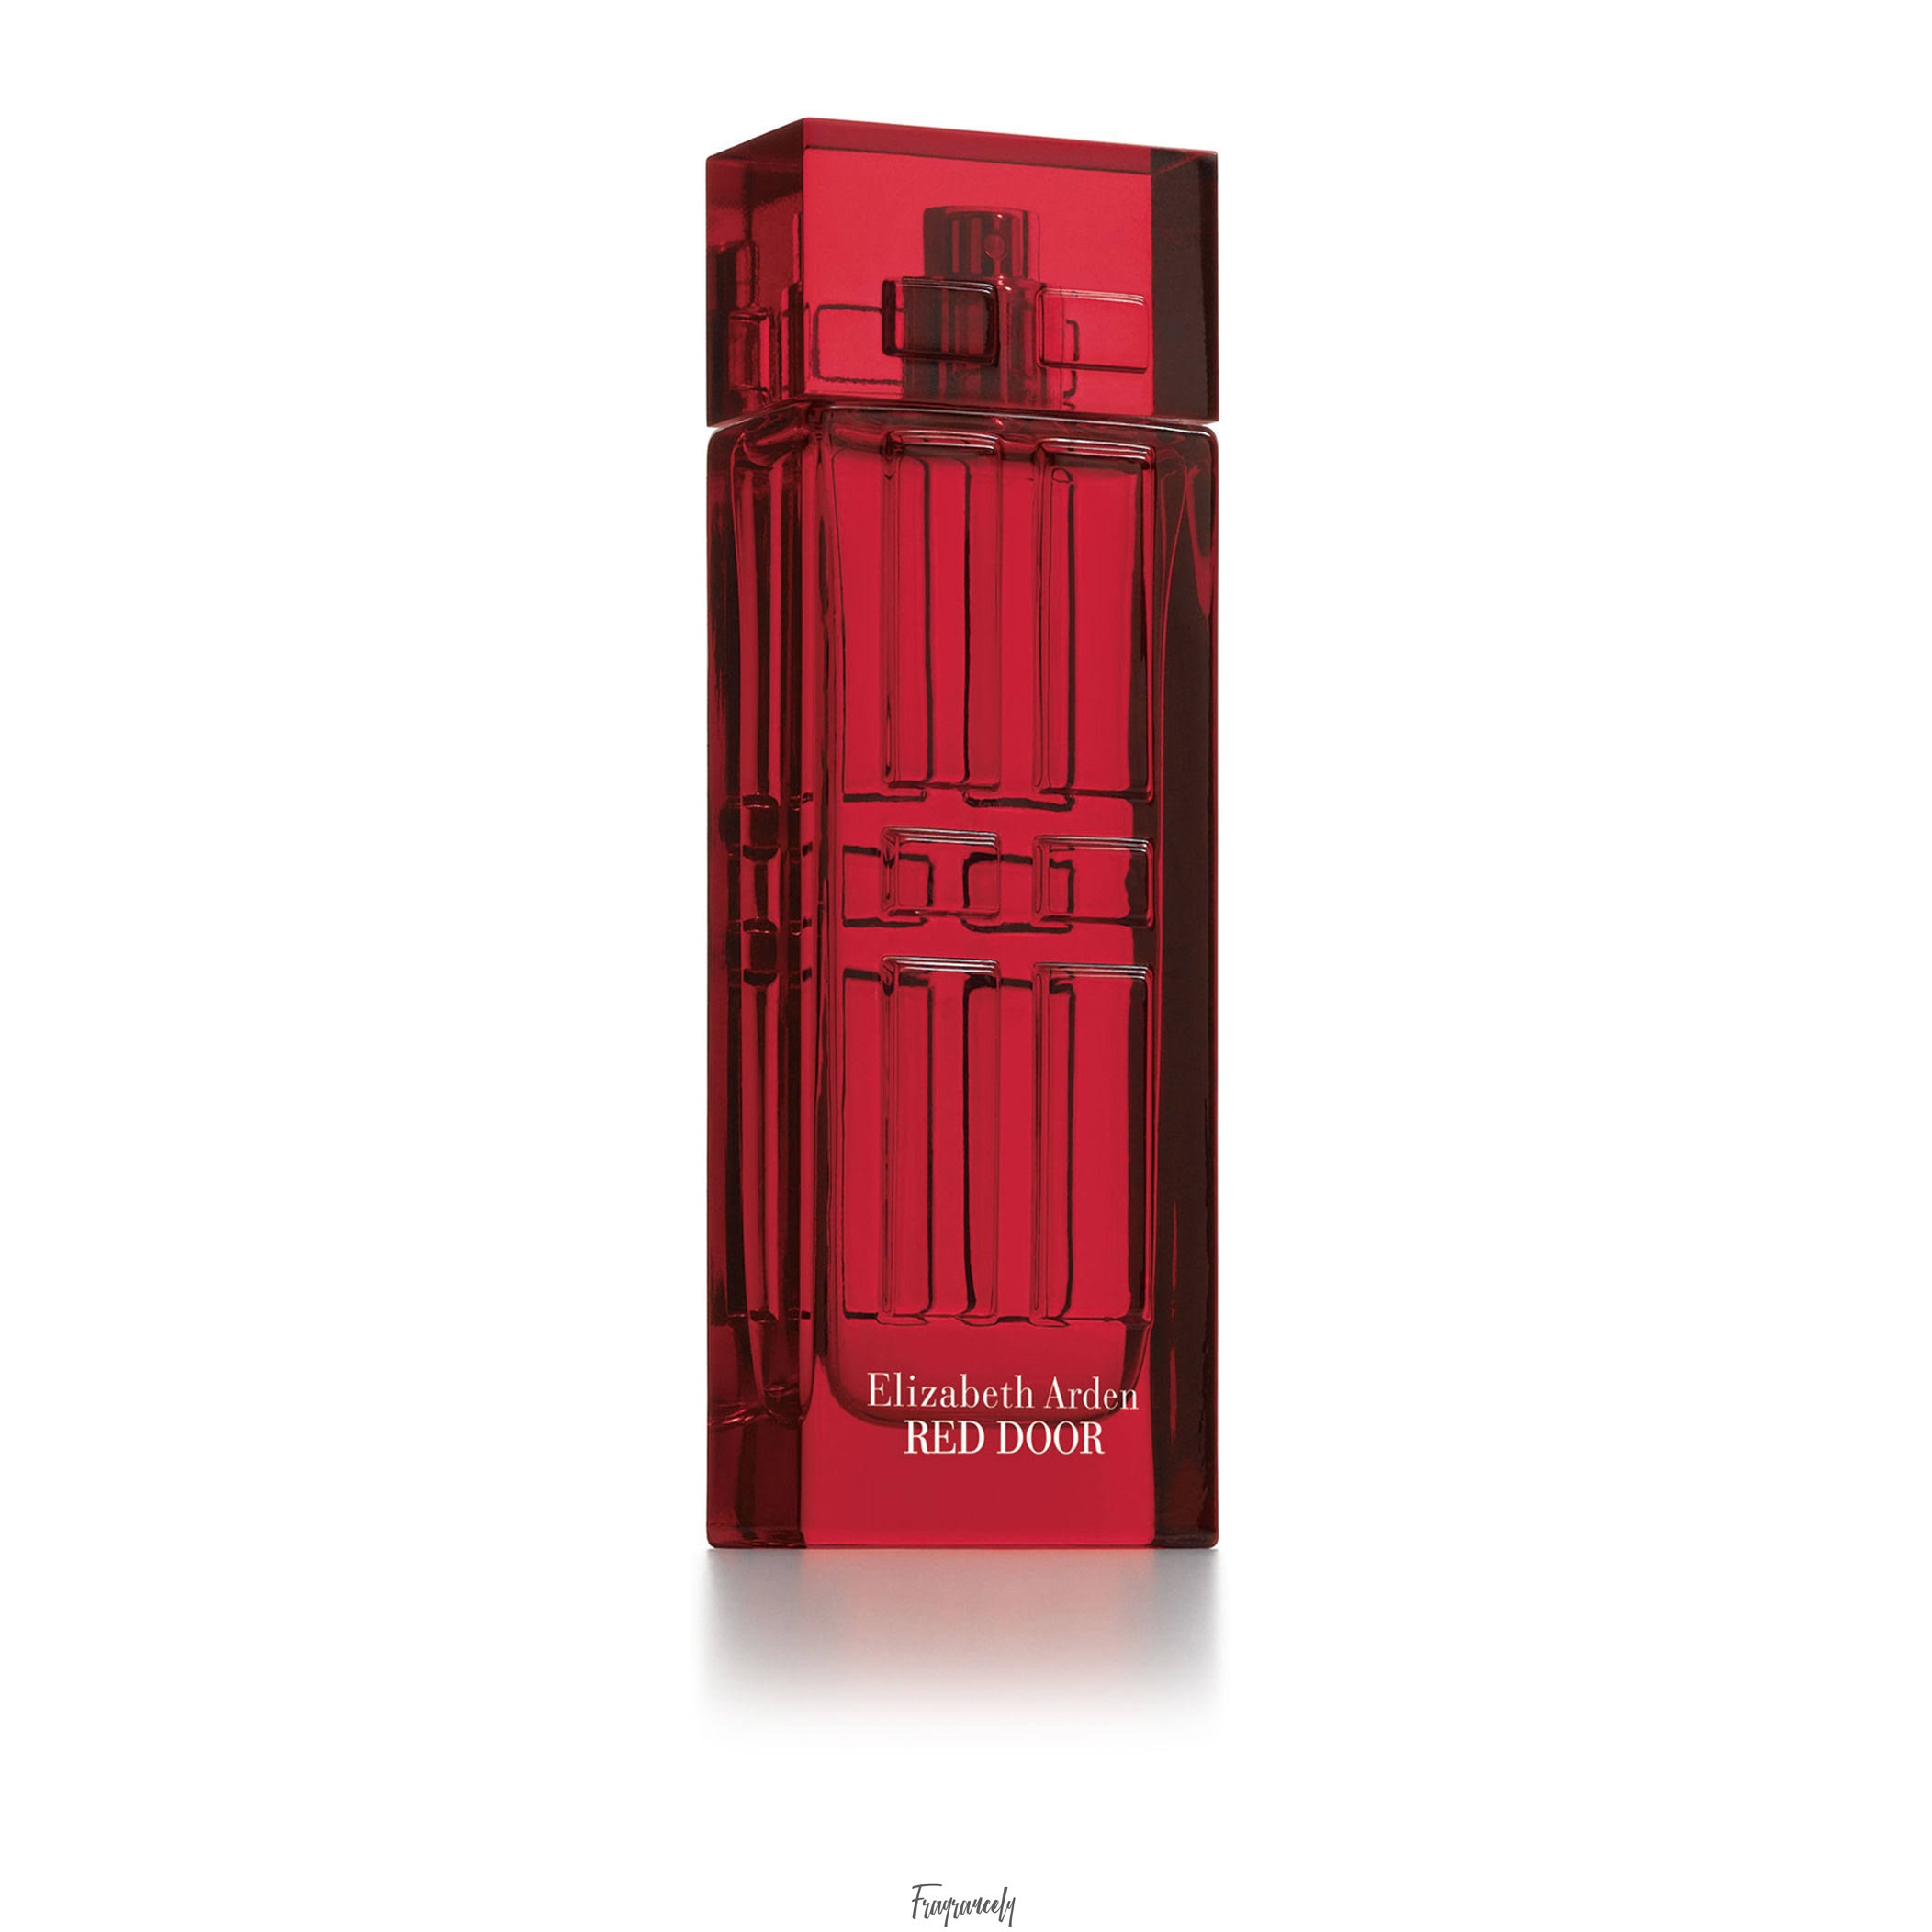 "Red Door" by Elizabeth Arden for Women Eau de Toilette Spray